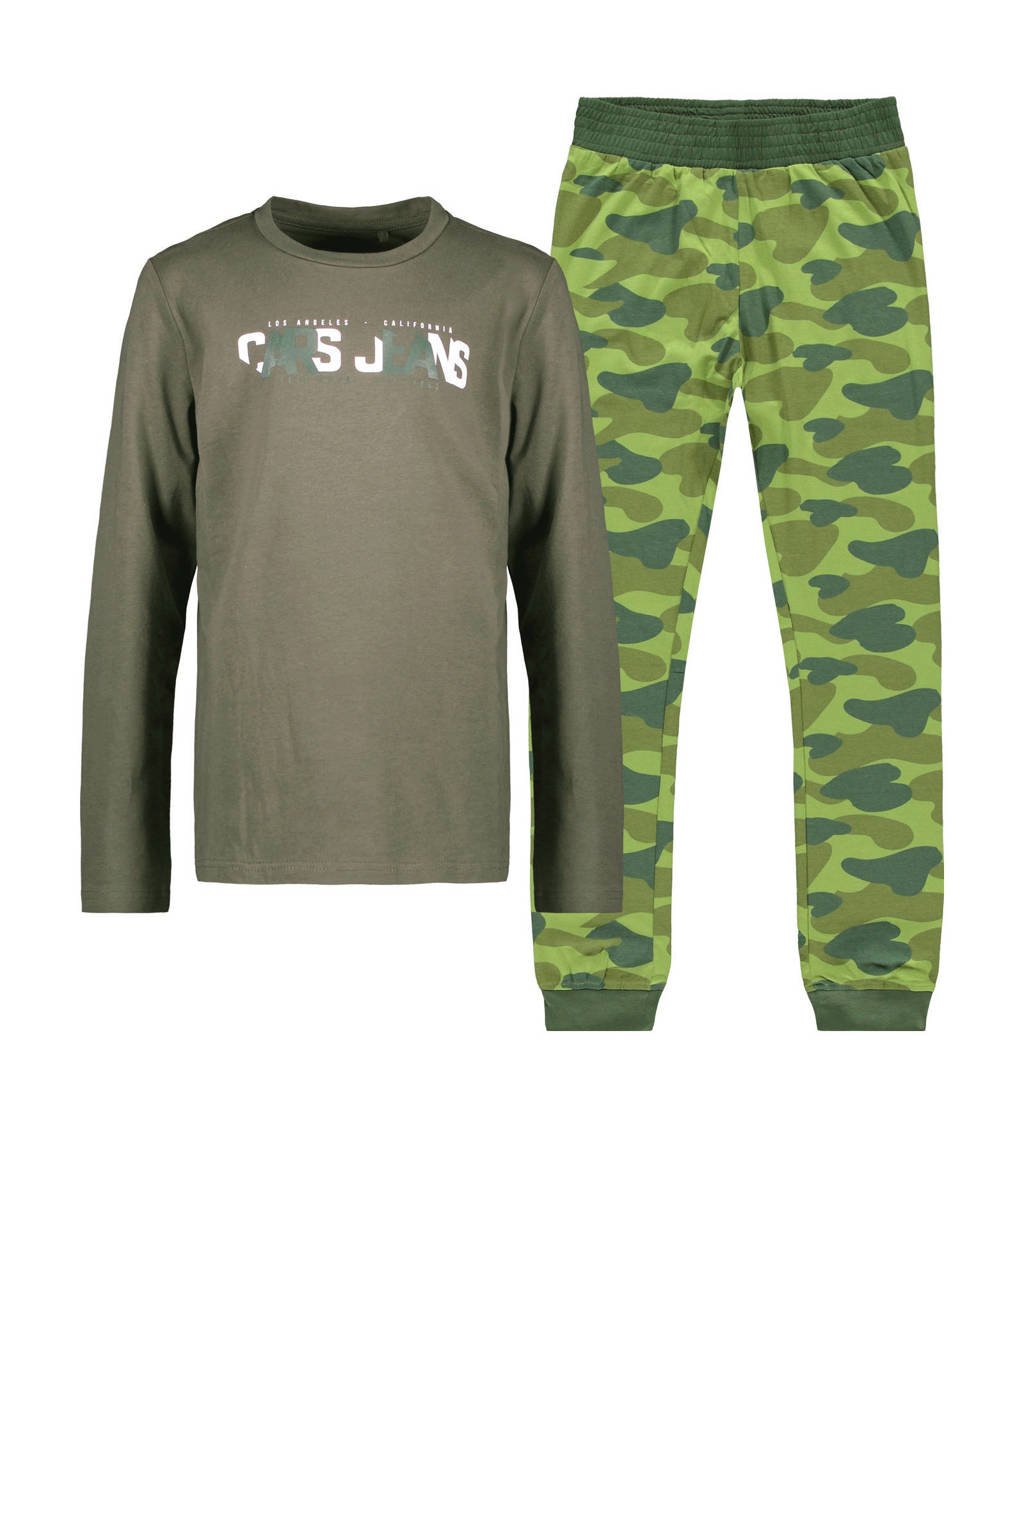 Cars   pyjama met camouflageprint groen/army groen